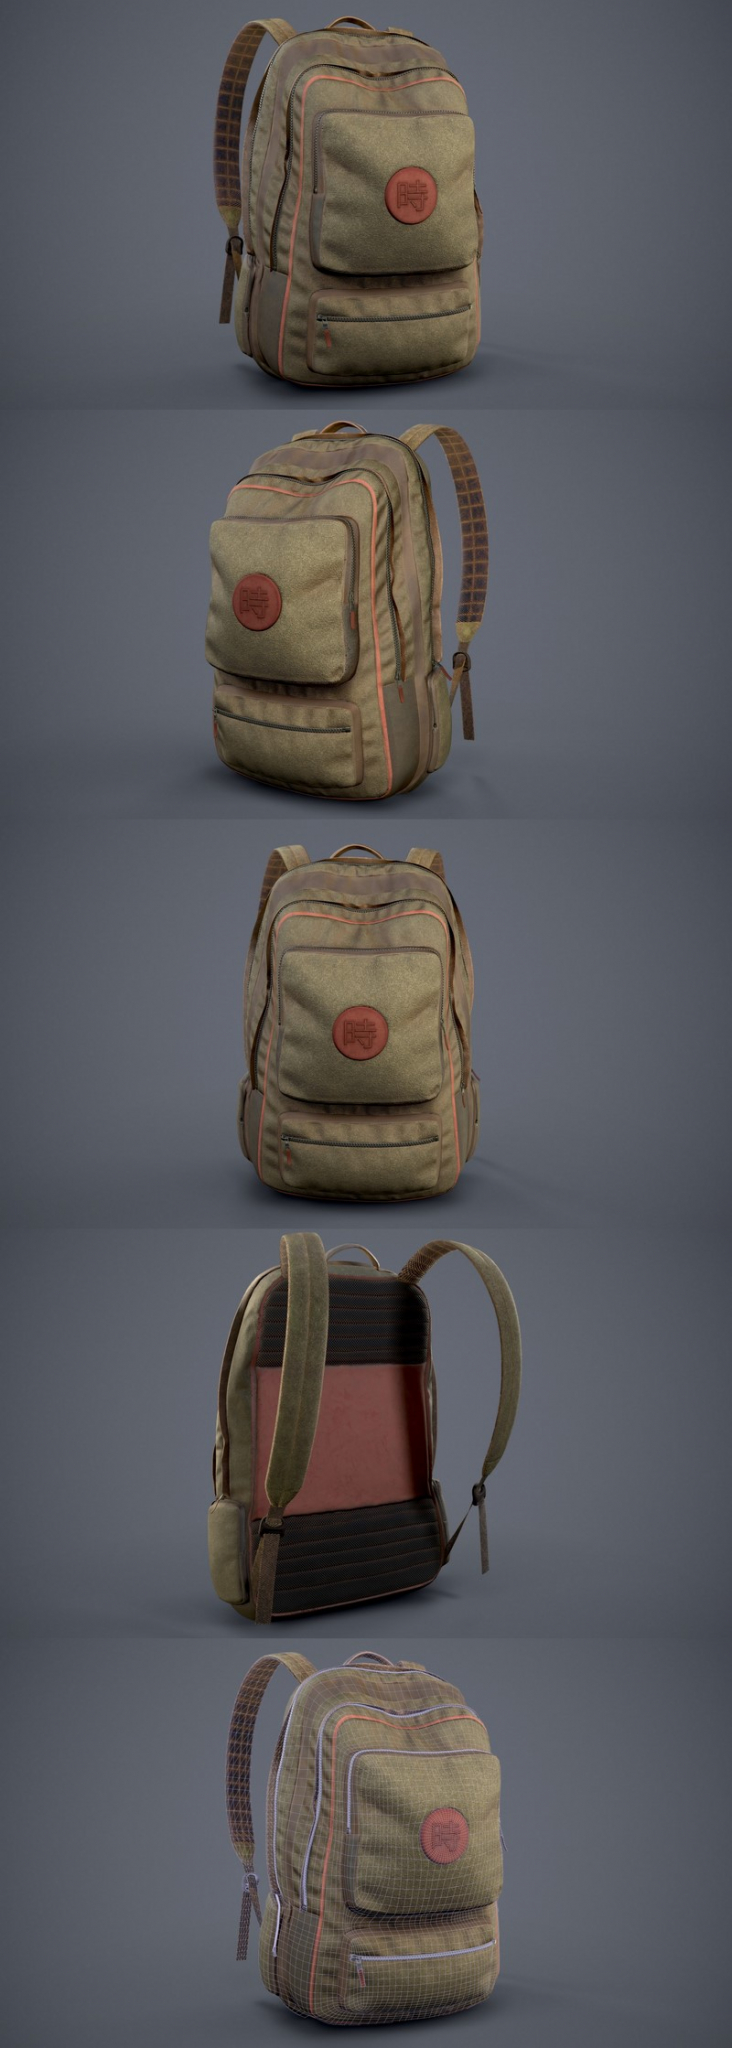 daz3d backpack